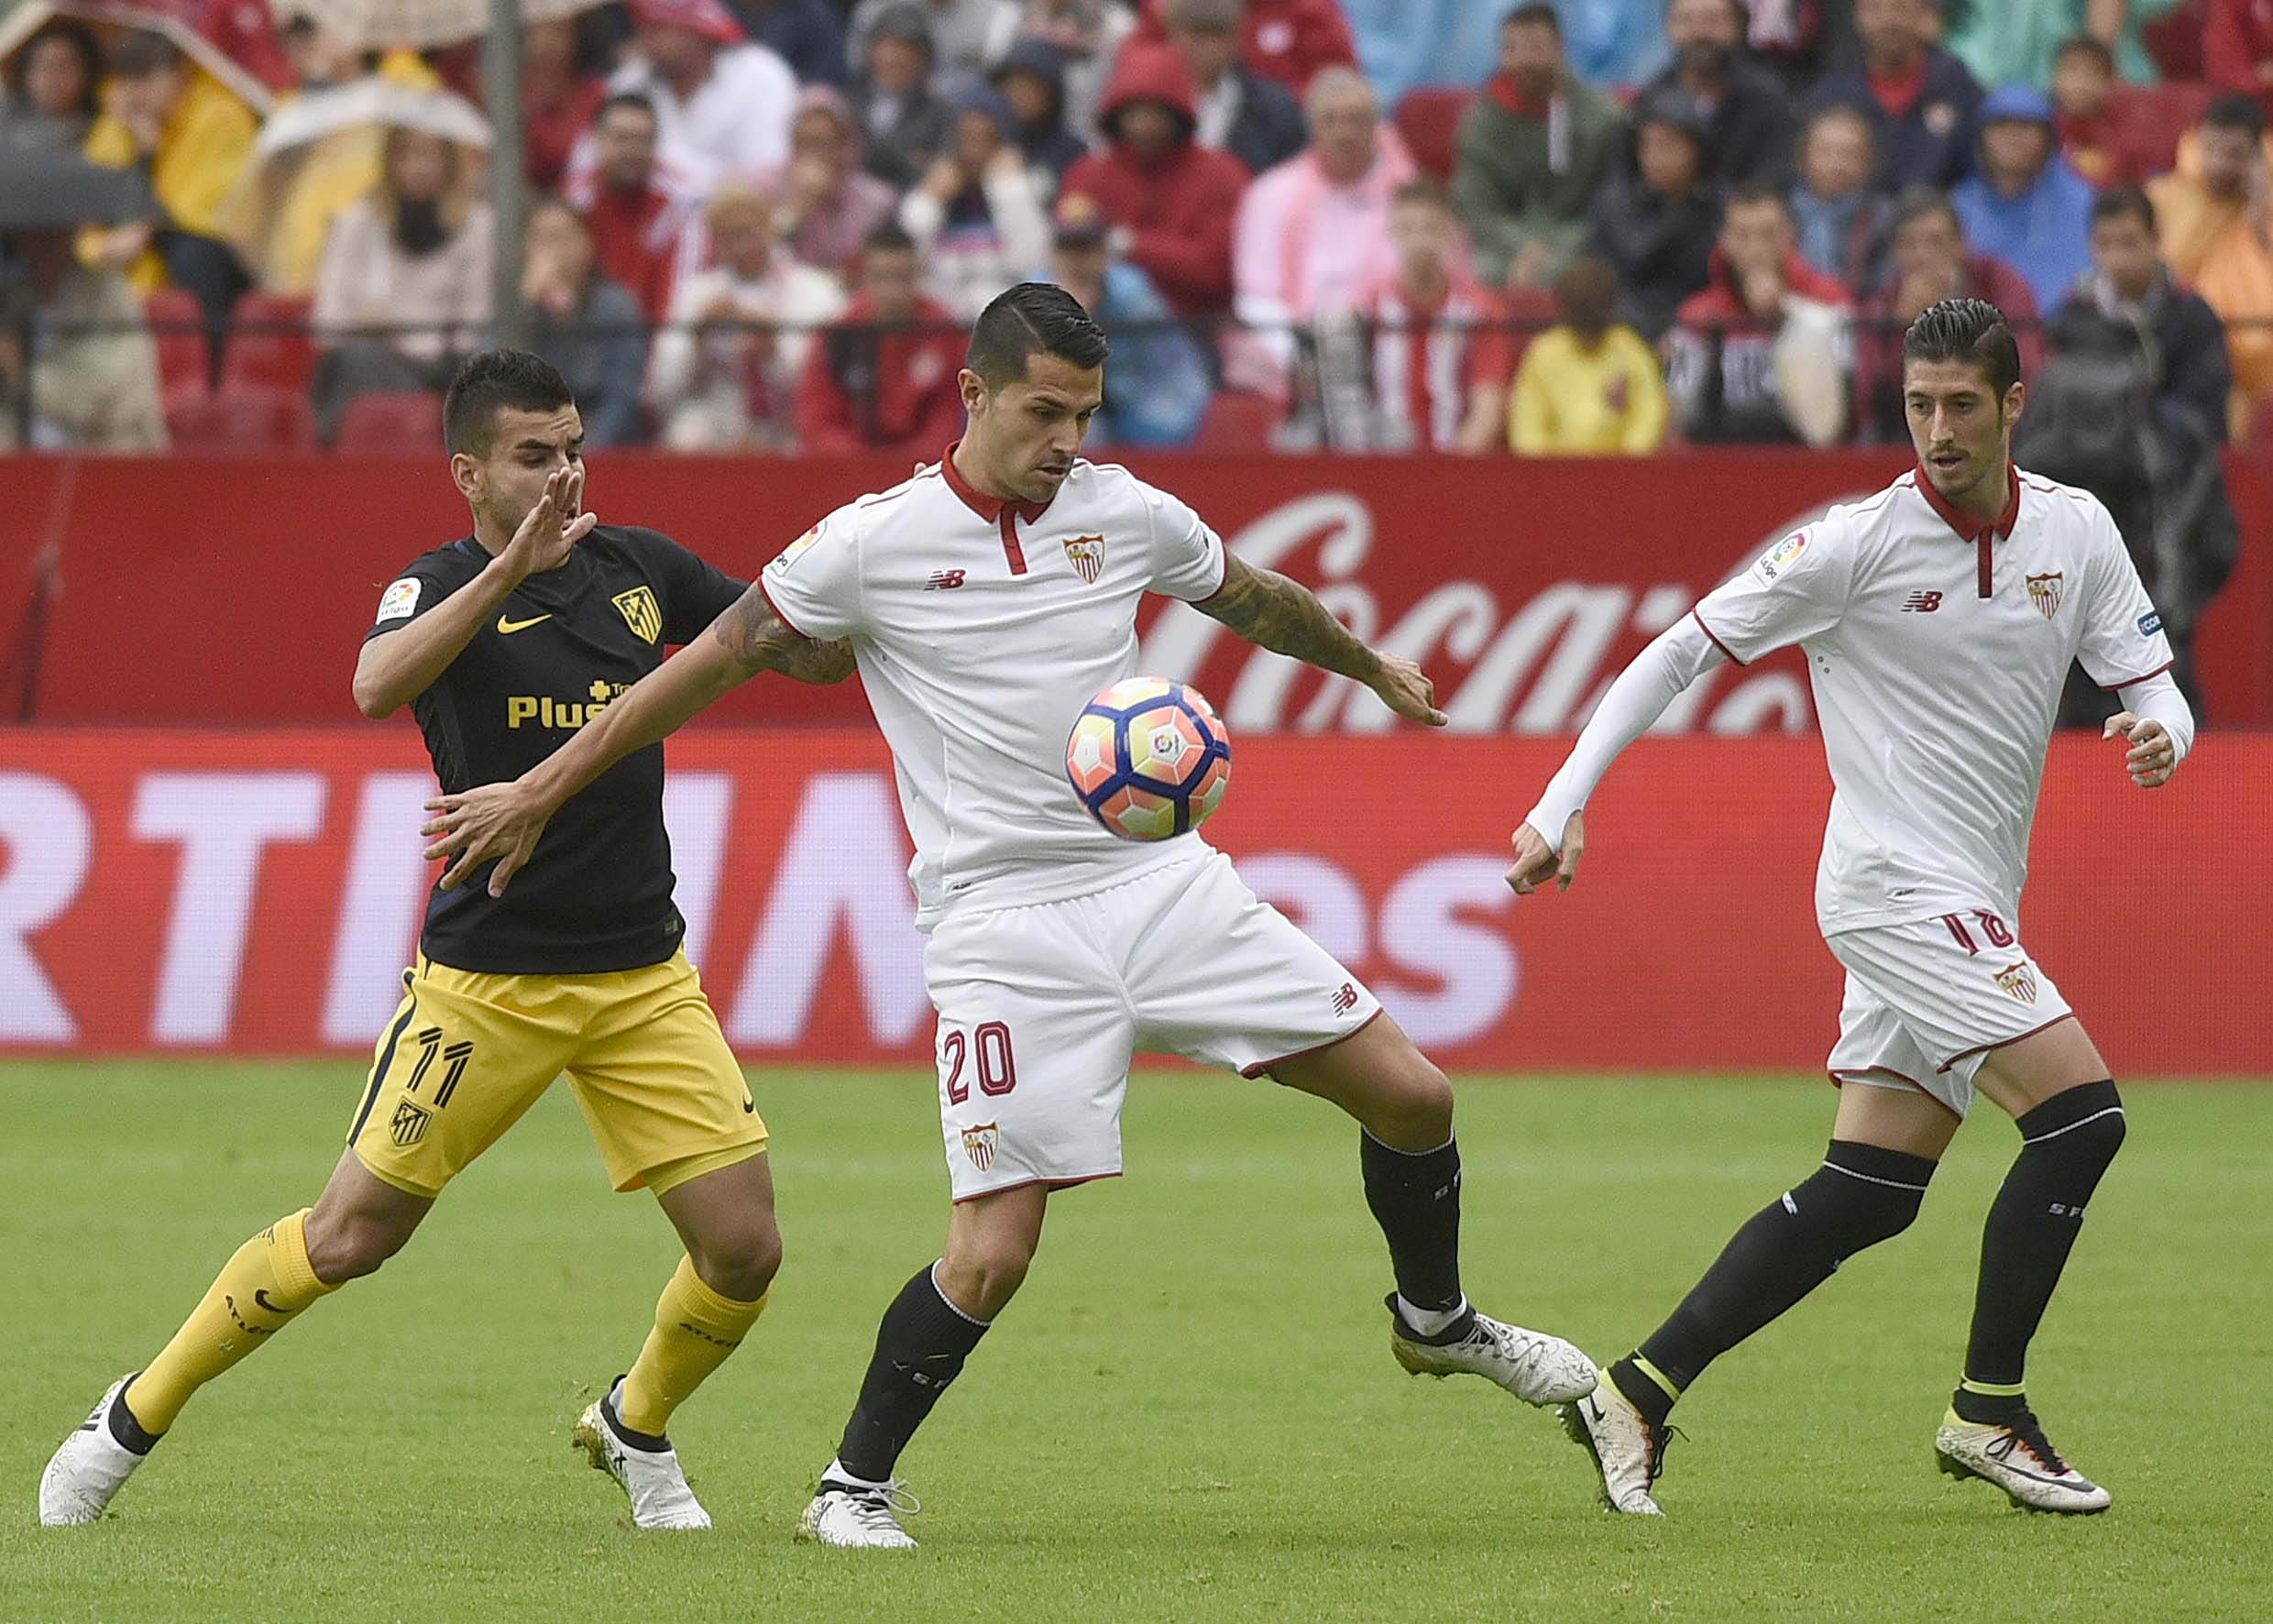 Vitolo en el Sevilla-Atlético de la 16-17